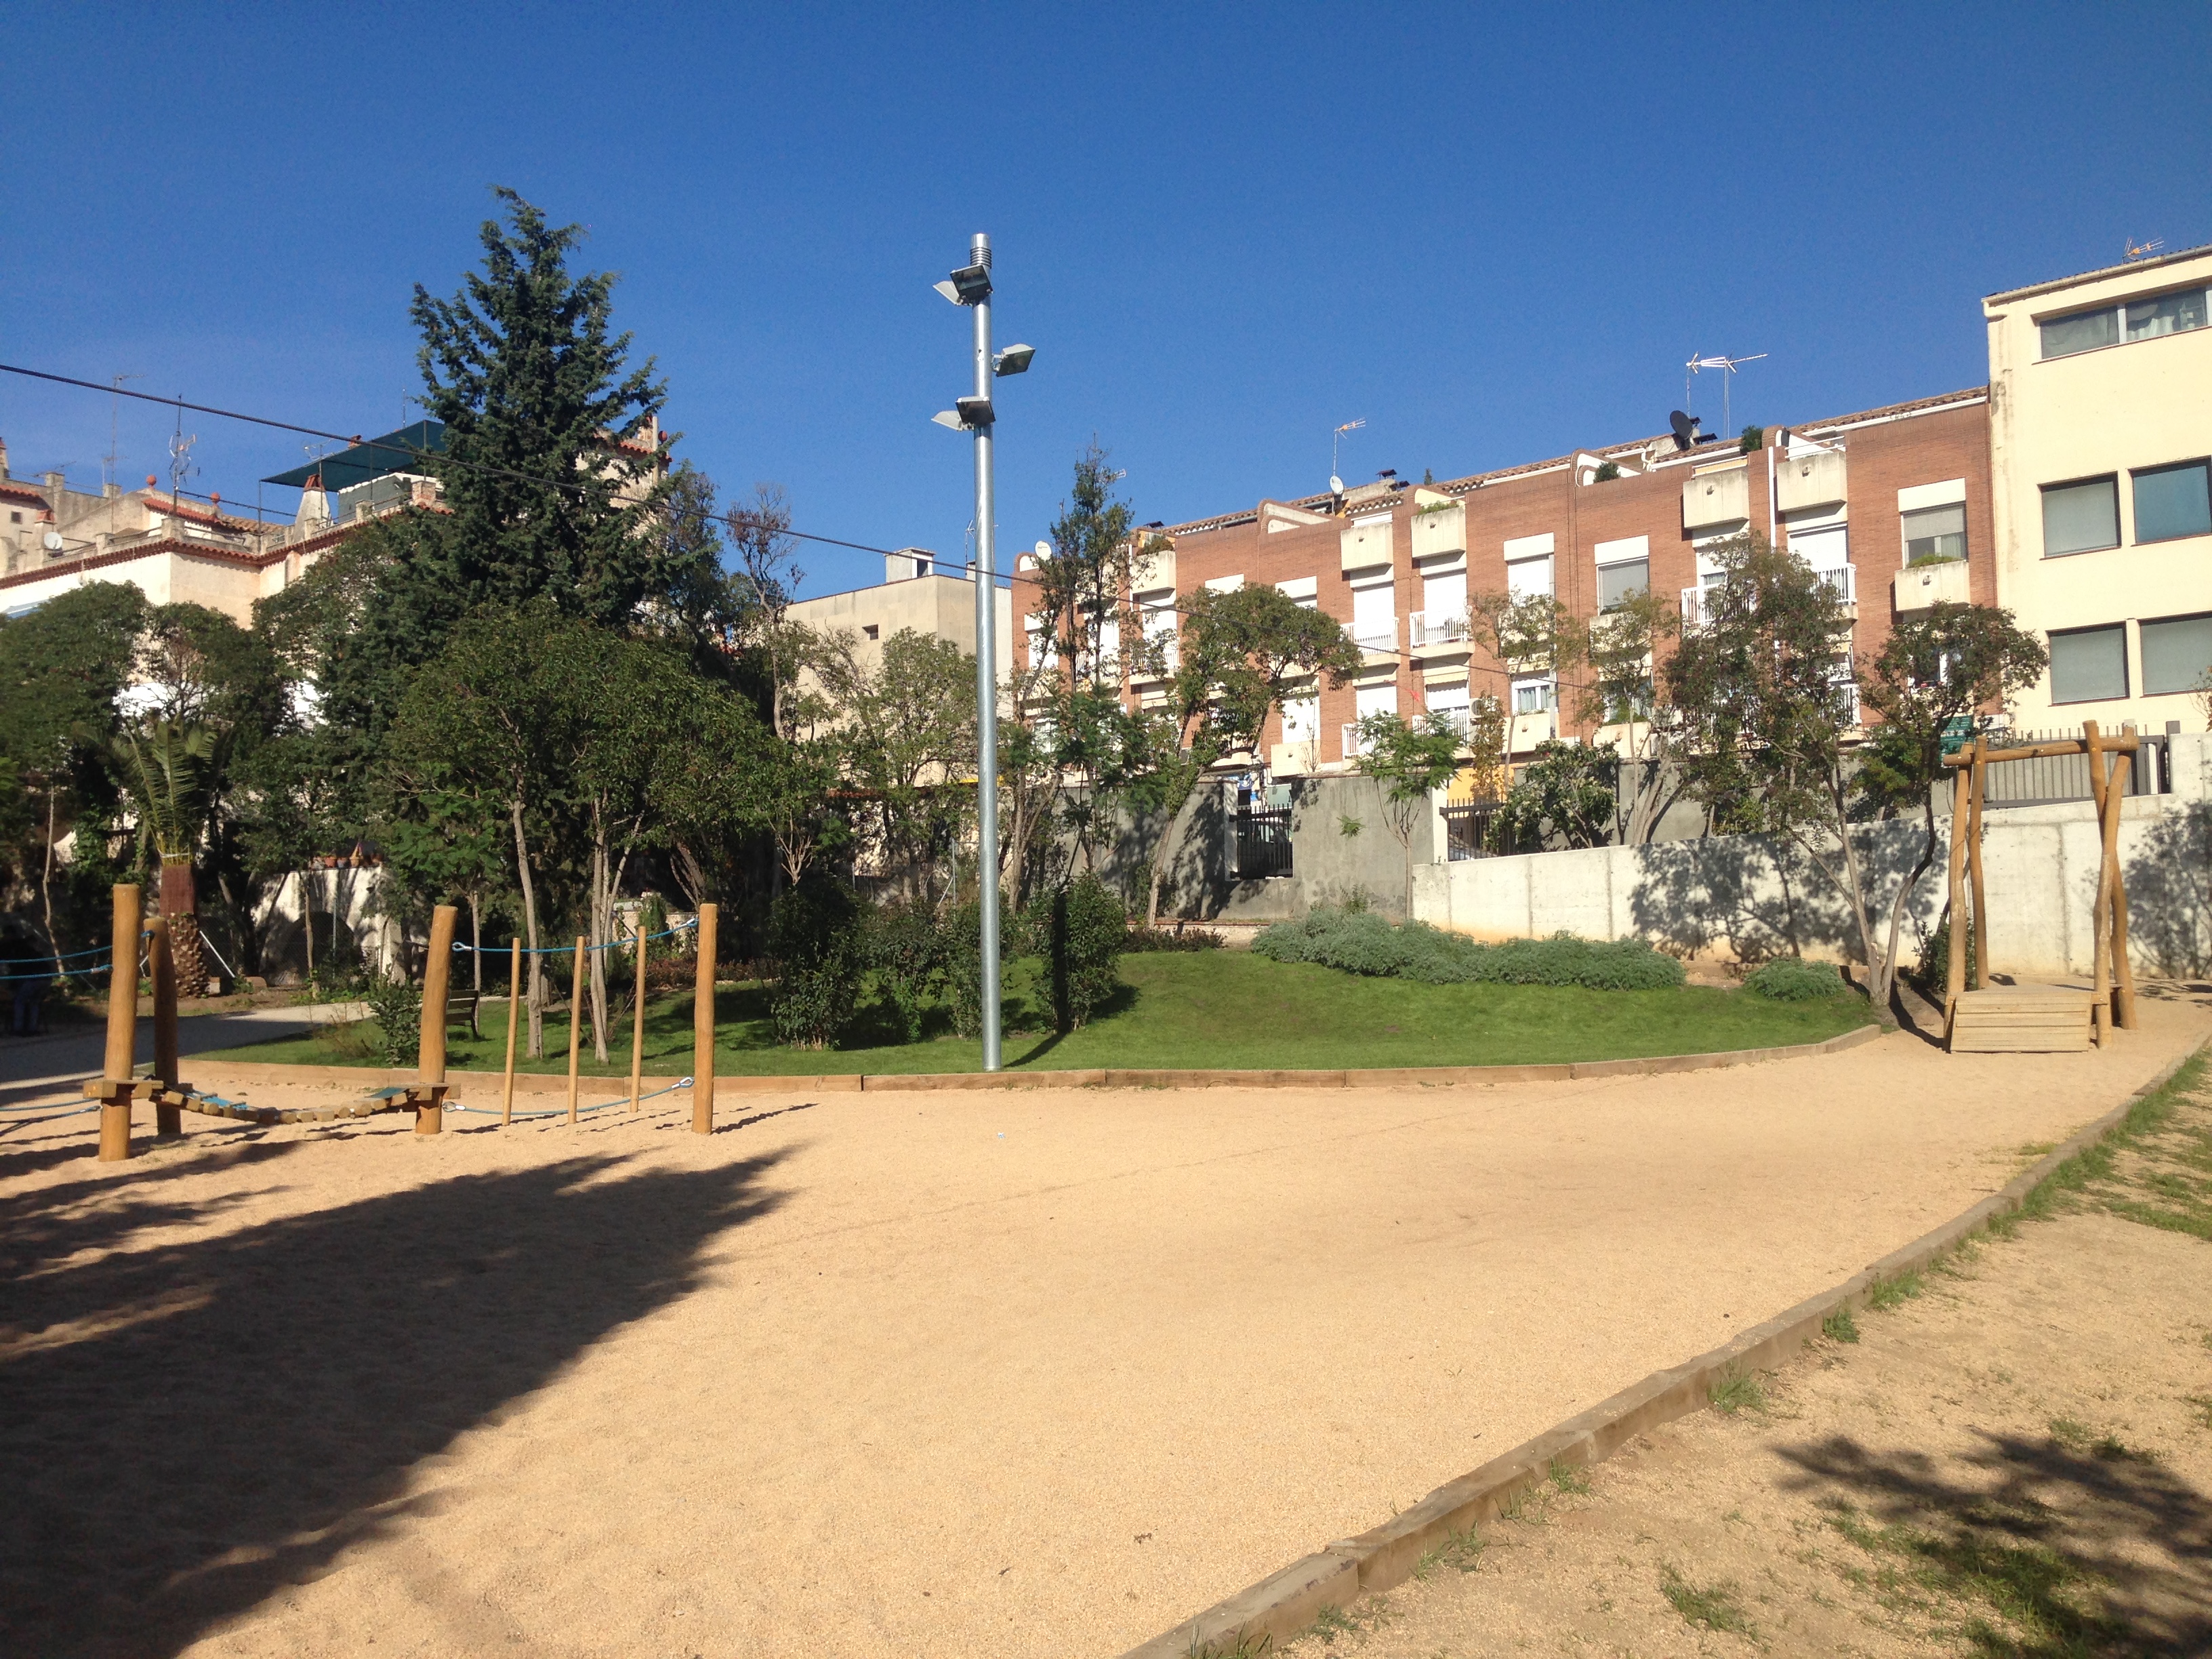 Parc Cal vives – Esparreguera